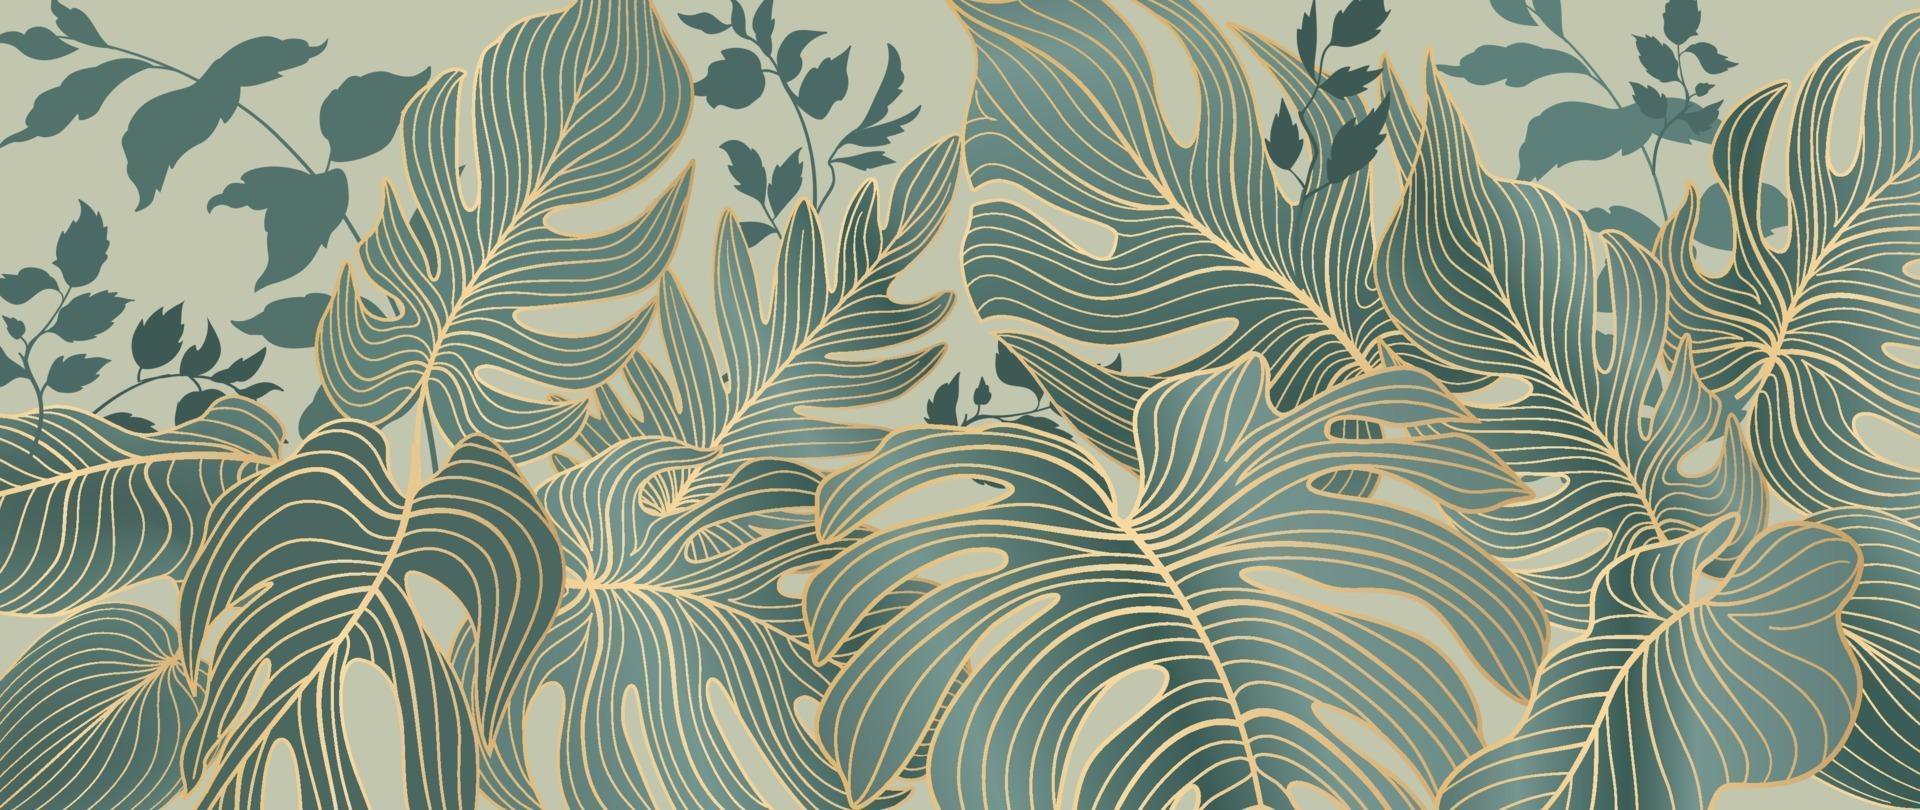 Blumenblätter Muster. Laubgarten Hintergrund. florale dekorative tropische Natur Sommer Palmblätter dekorative Retro-Stil Tapete vektor